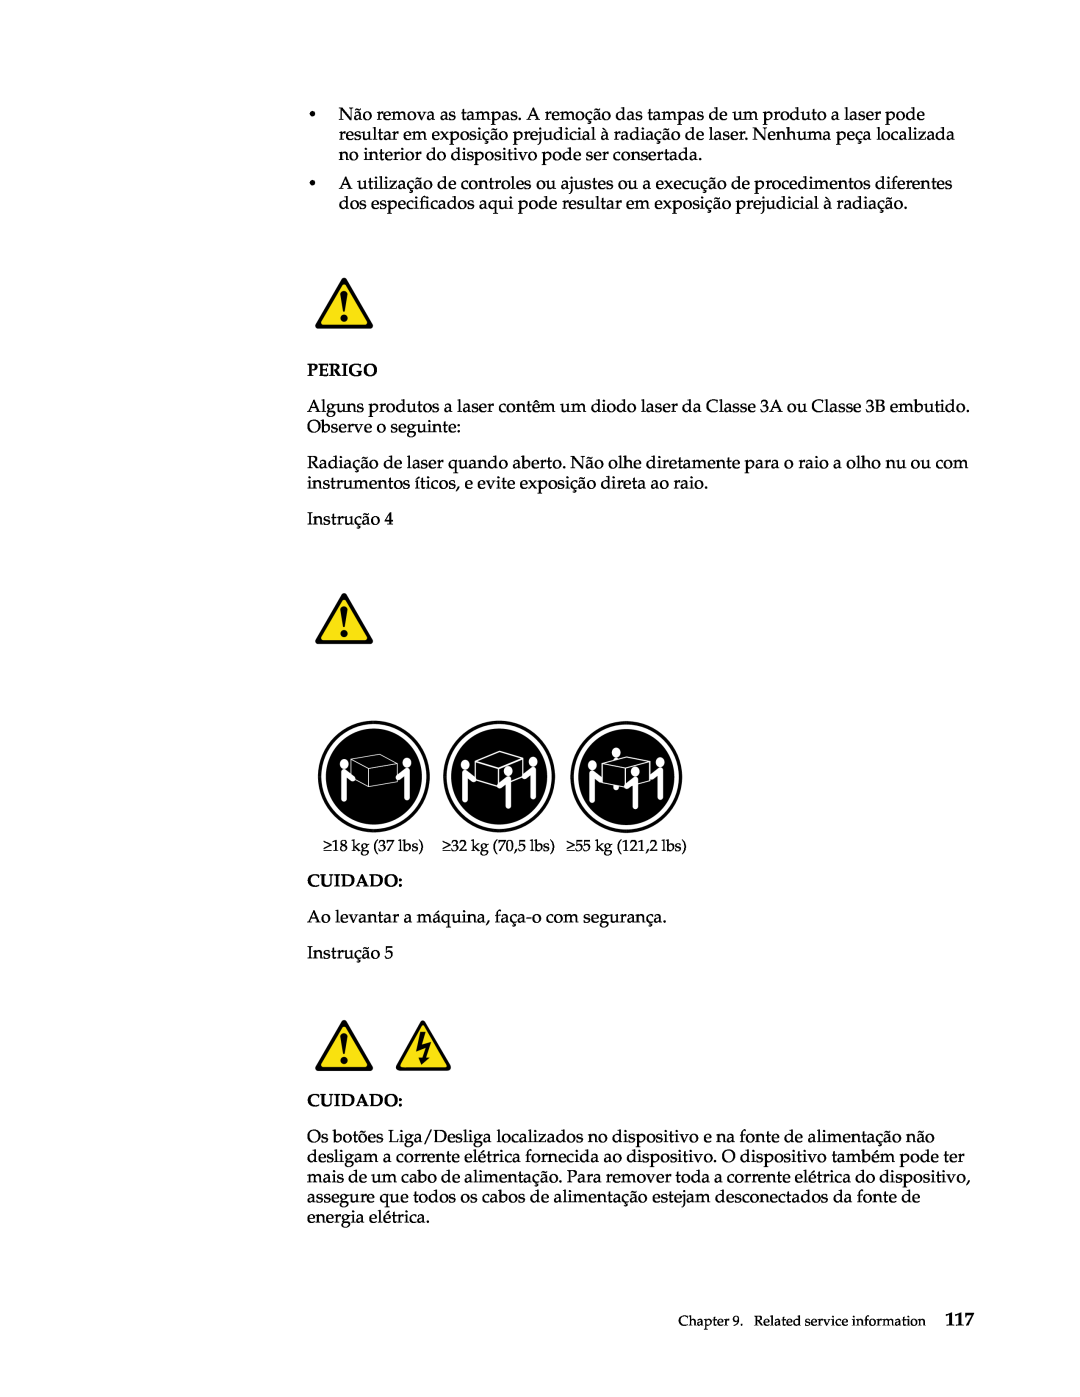 IBM xSeries 330 manual Perigo, Instrução, Cuidado 